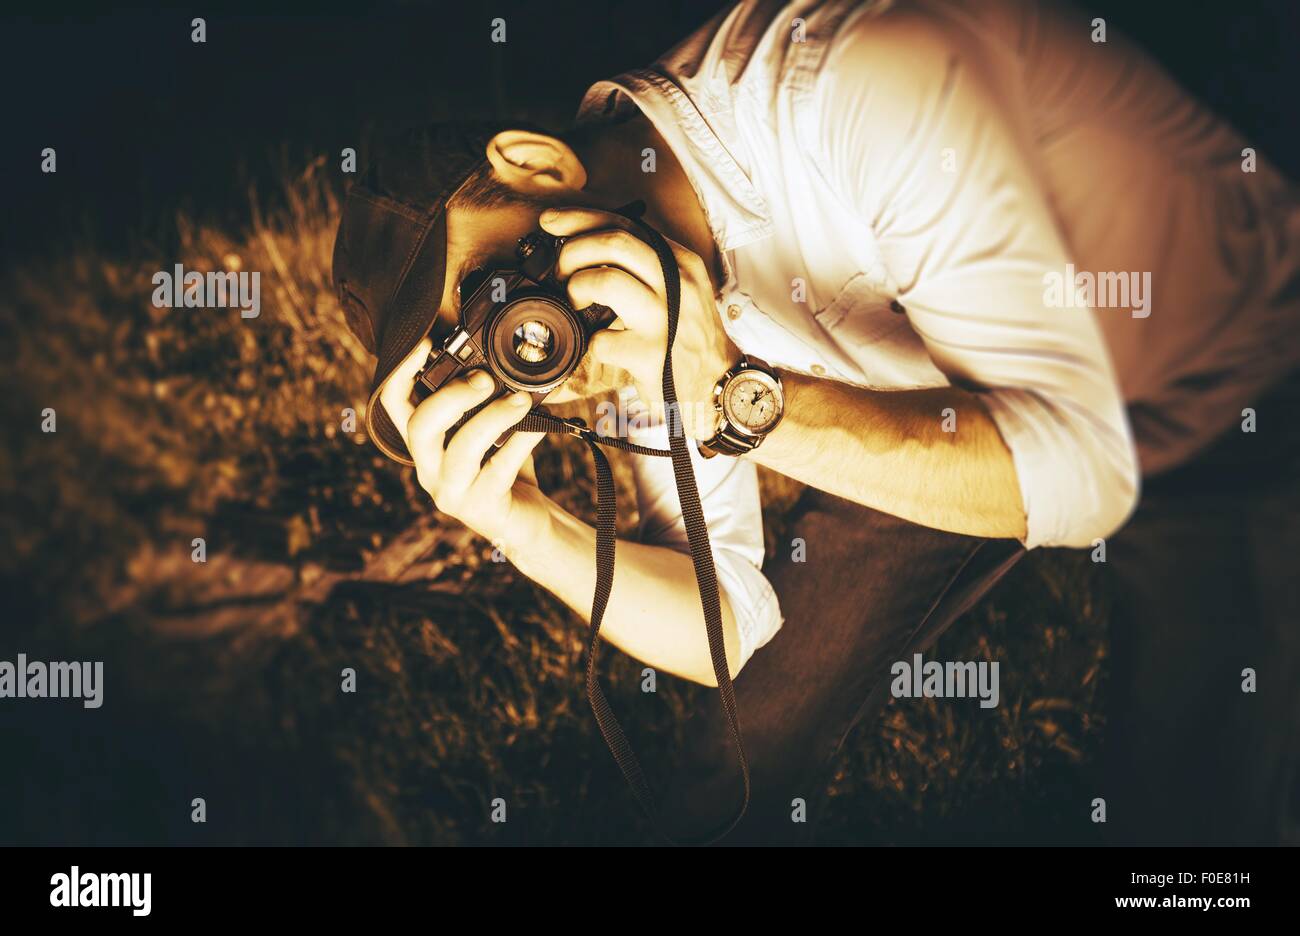 Fotograf in Aktion. Kaukasischen Männchen mit Vintage Analog-Kamera fotografieren. Sepia Verschneidung Fotografie Farbkonzept. Stockfoto